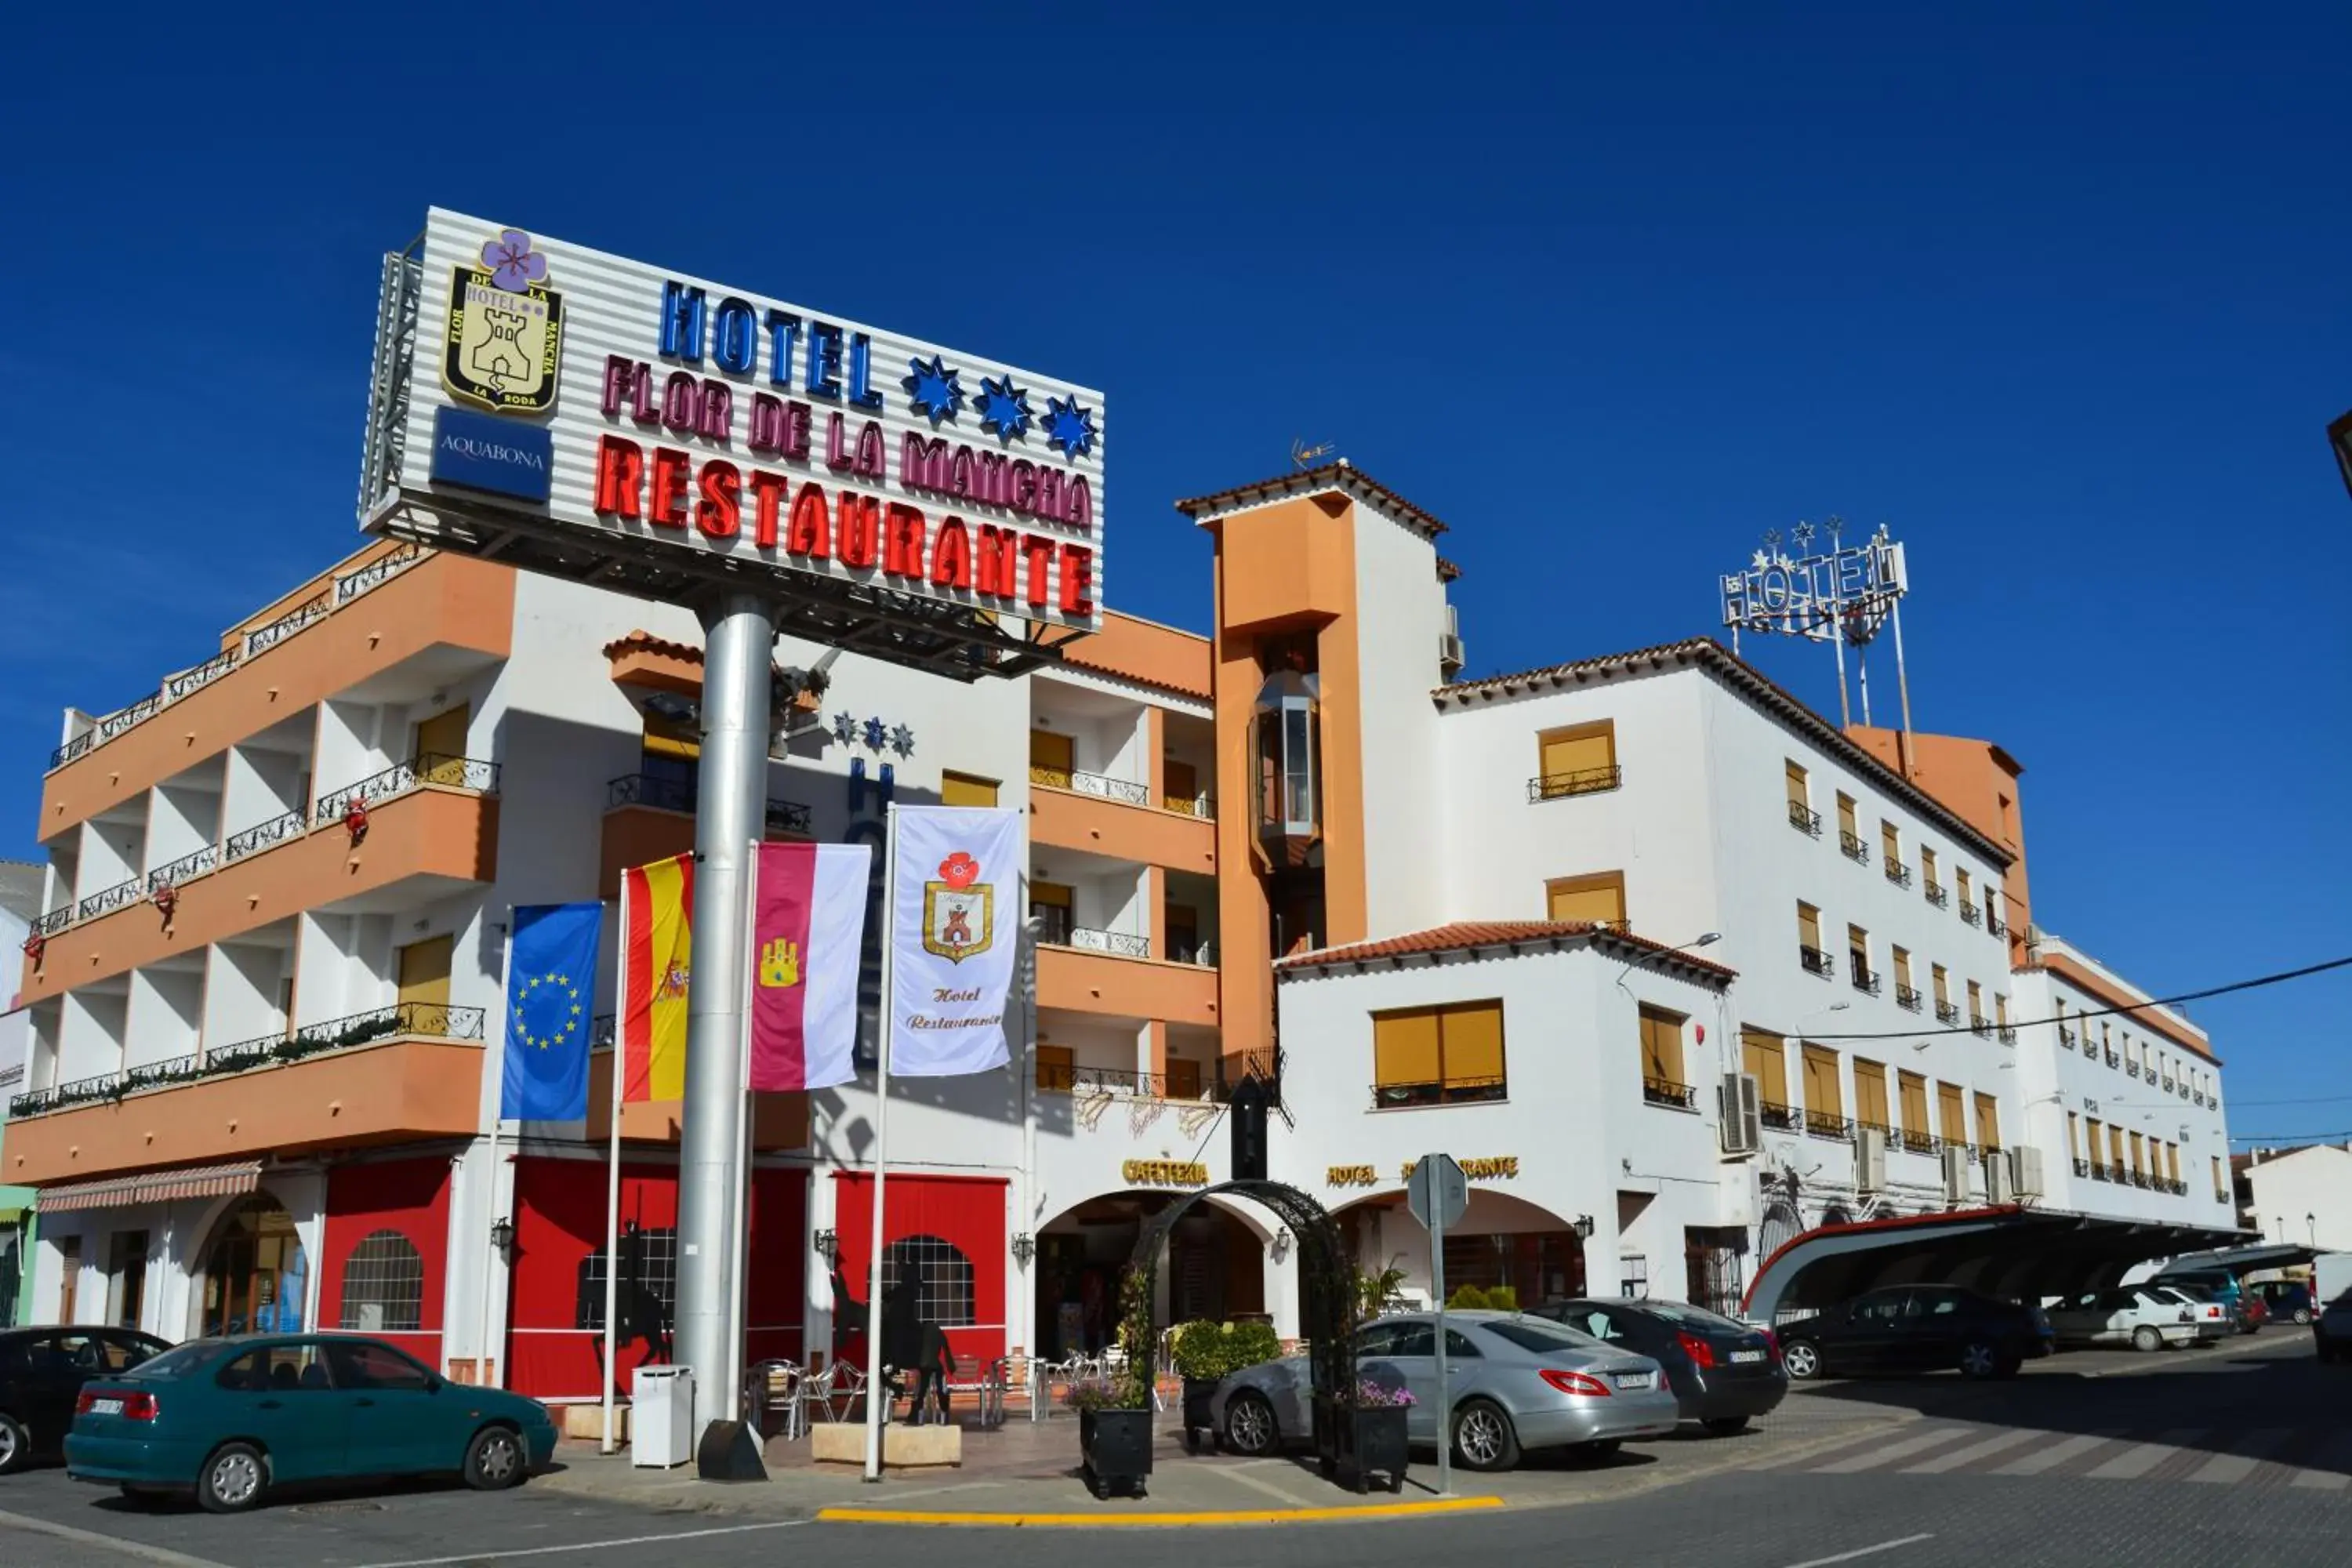 Property building in Hotel Flor de la Mancha